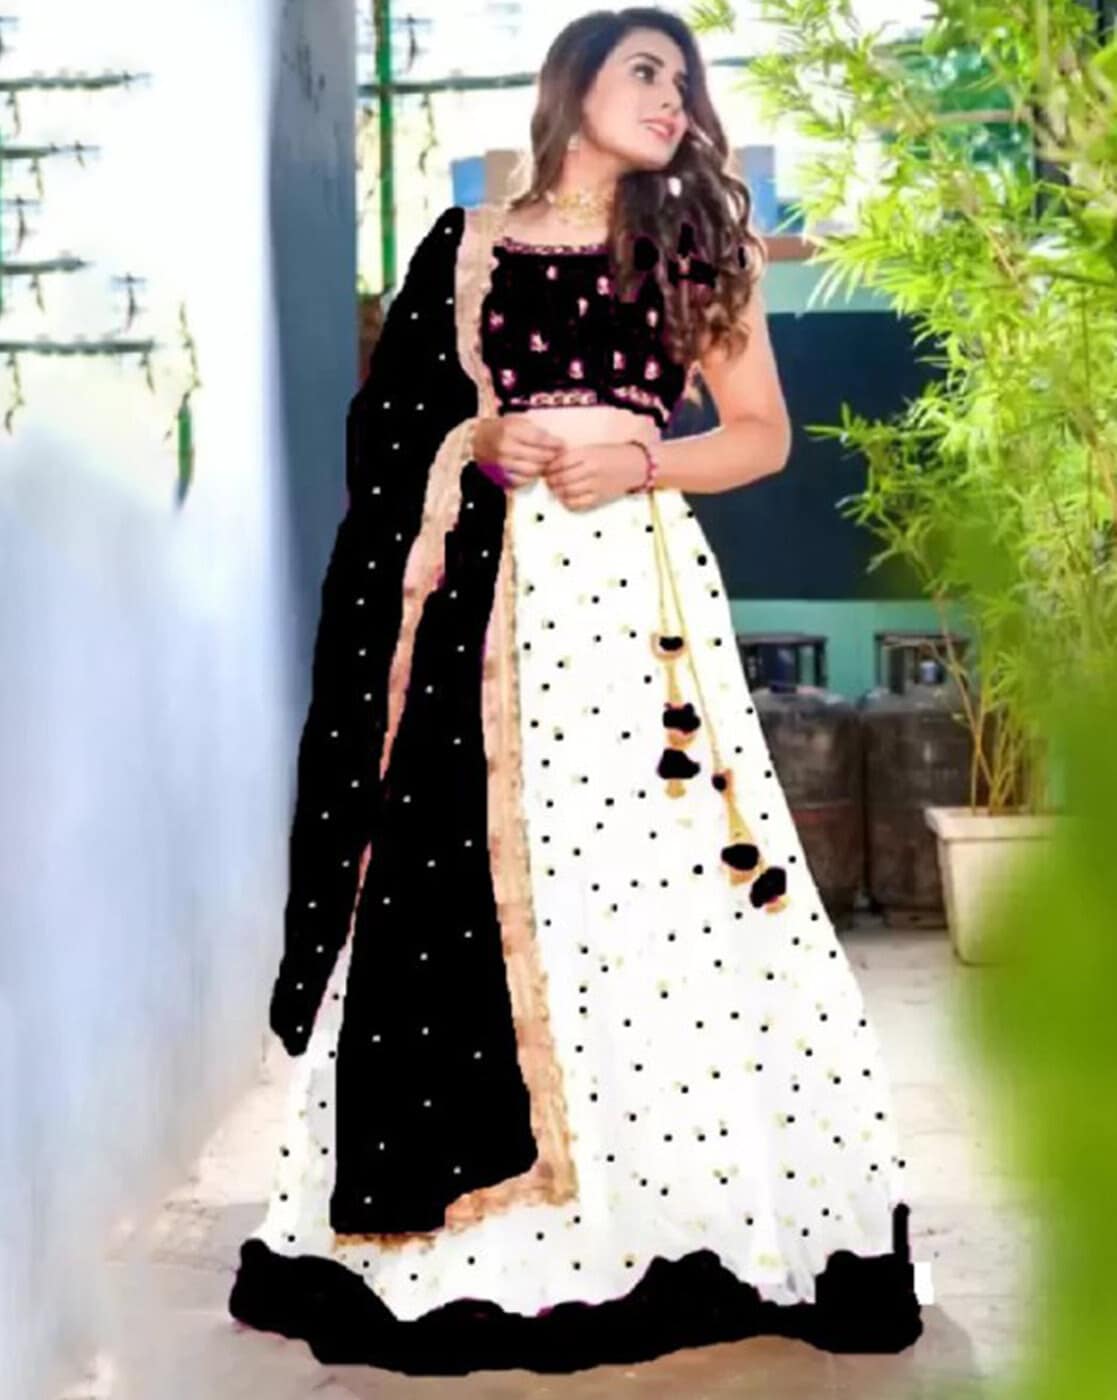 सूरत लहंगो की फैक्ट्री | Explore : Girlish, Bridal, Non-Bridal Lehenga |  Bombay Textile Market Surat - YouTube